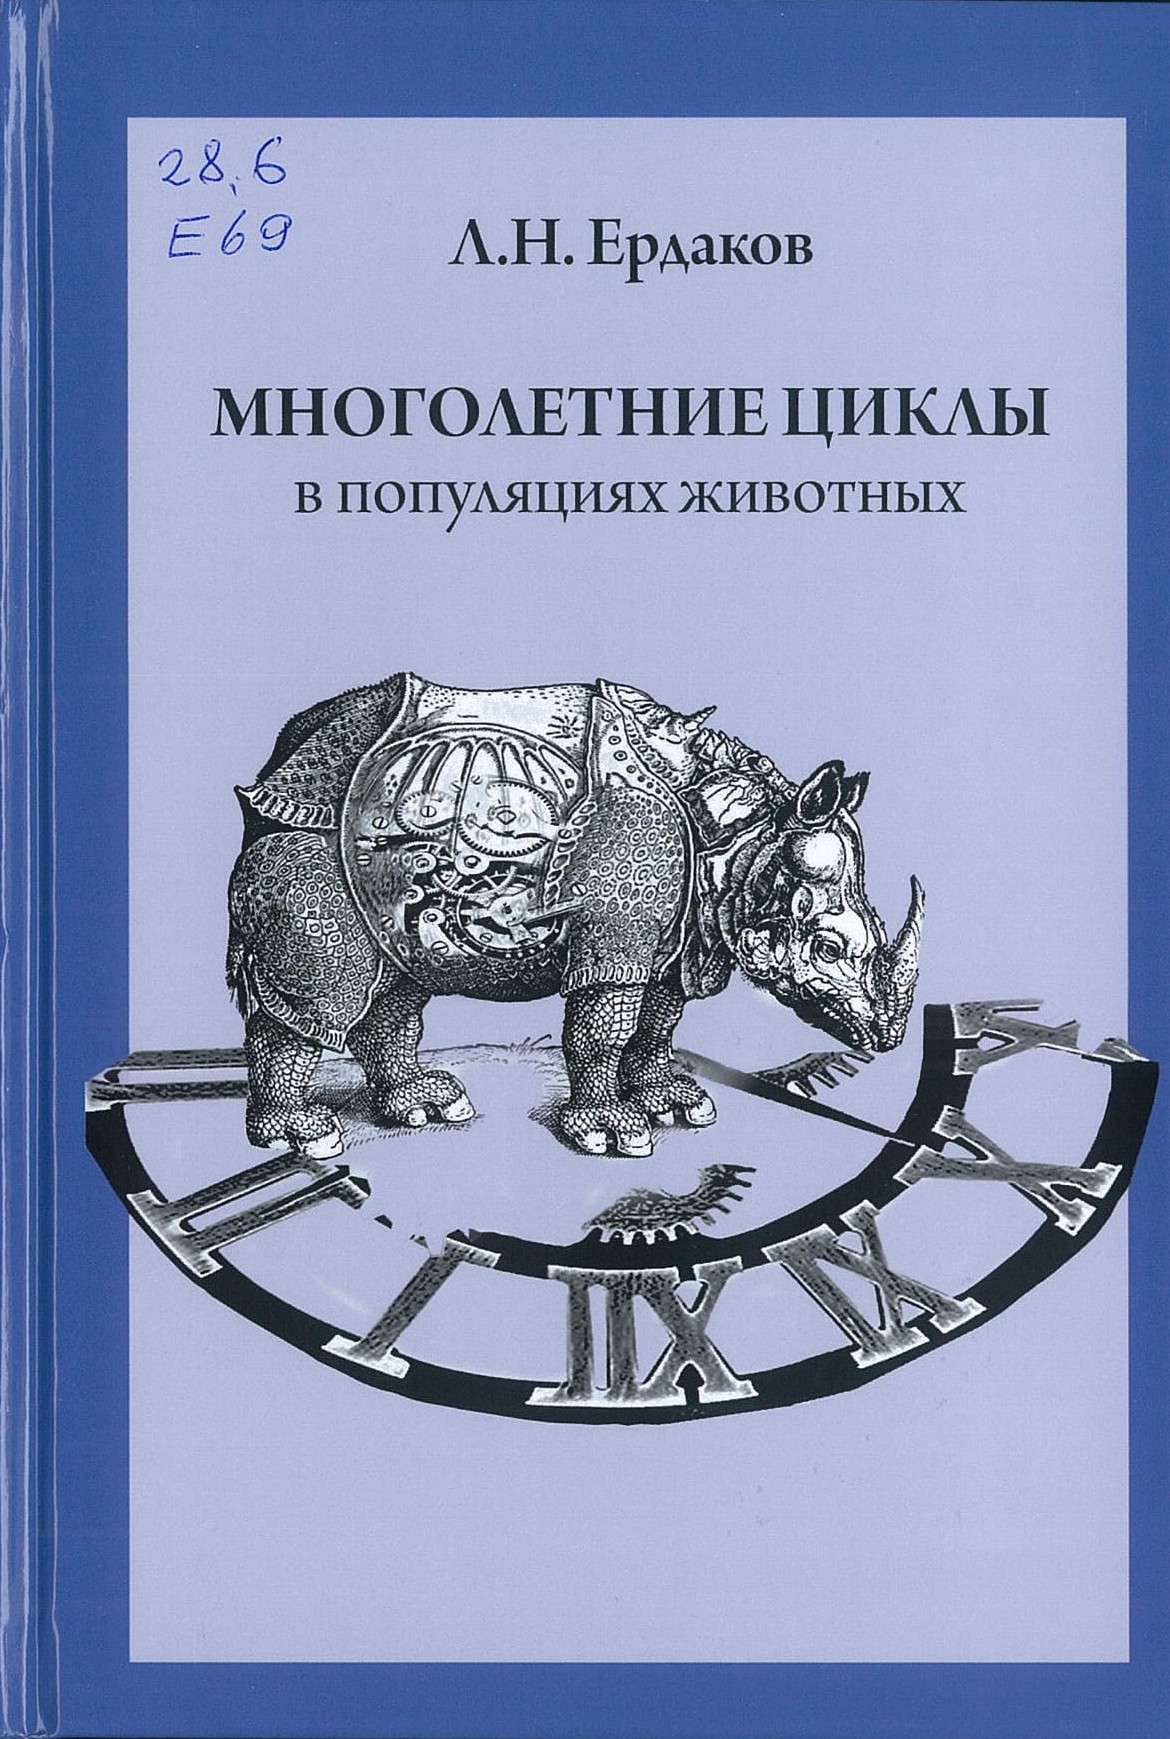 Ердаков, Л. Н. Многолетние циклы в популяциях животных